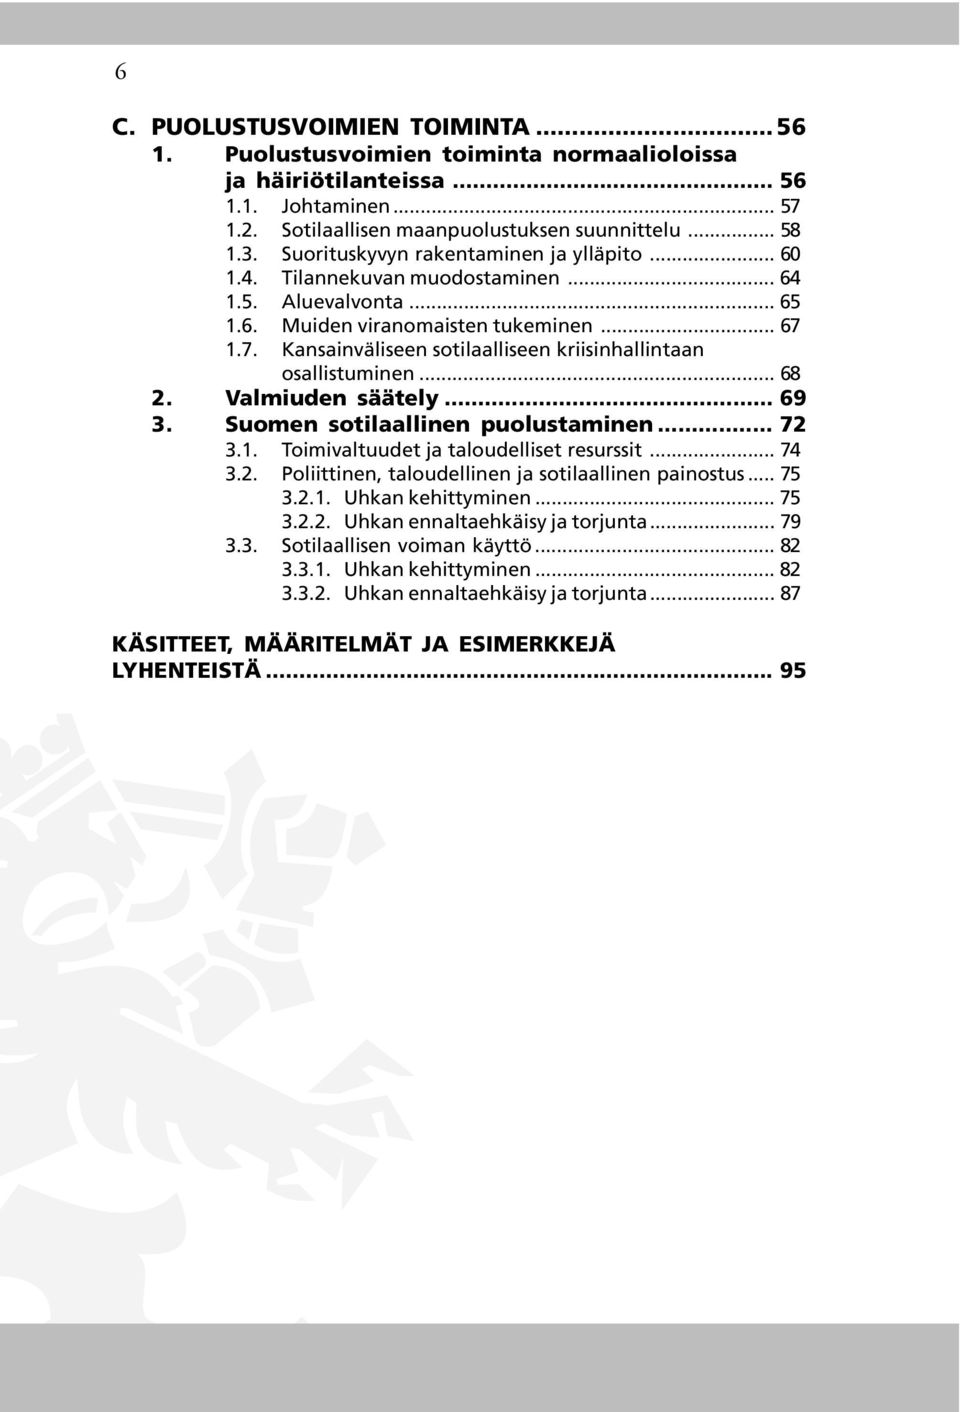 1.7. Kansainväliseen sotilaalliseen kriisinhallintaan osallistuminen... 68 2. Valmiuden säätely... 69 3. Suomen sotilaallinen puolustaminen... 72 3.1. Toimivaltuudet ja taloudelliset resurssit... 74 3.